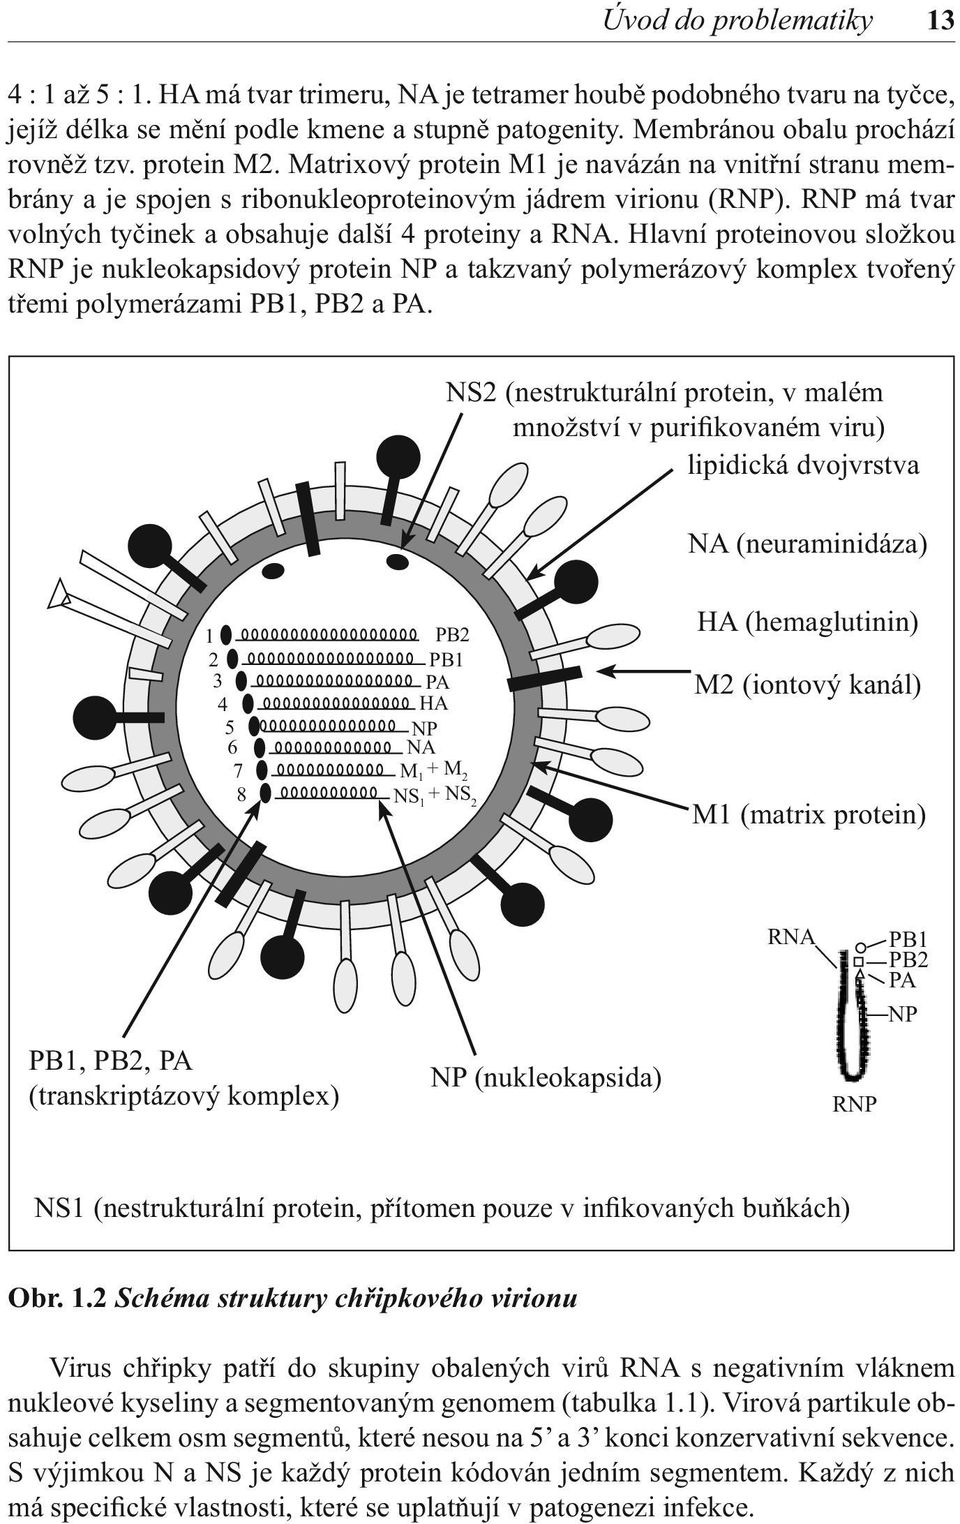 Hlavní proteinovou složkou RNP je nukleokapsidový protein NP a takzvaný polymerázový komplex tvořený třemi polymerázami PB1, PB2 a PA.